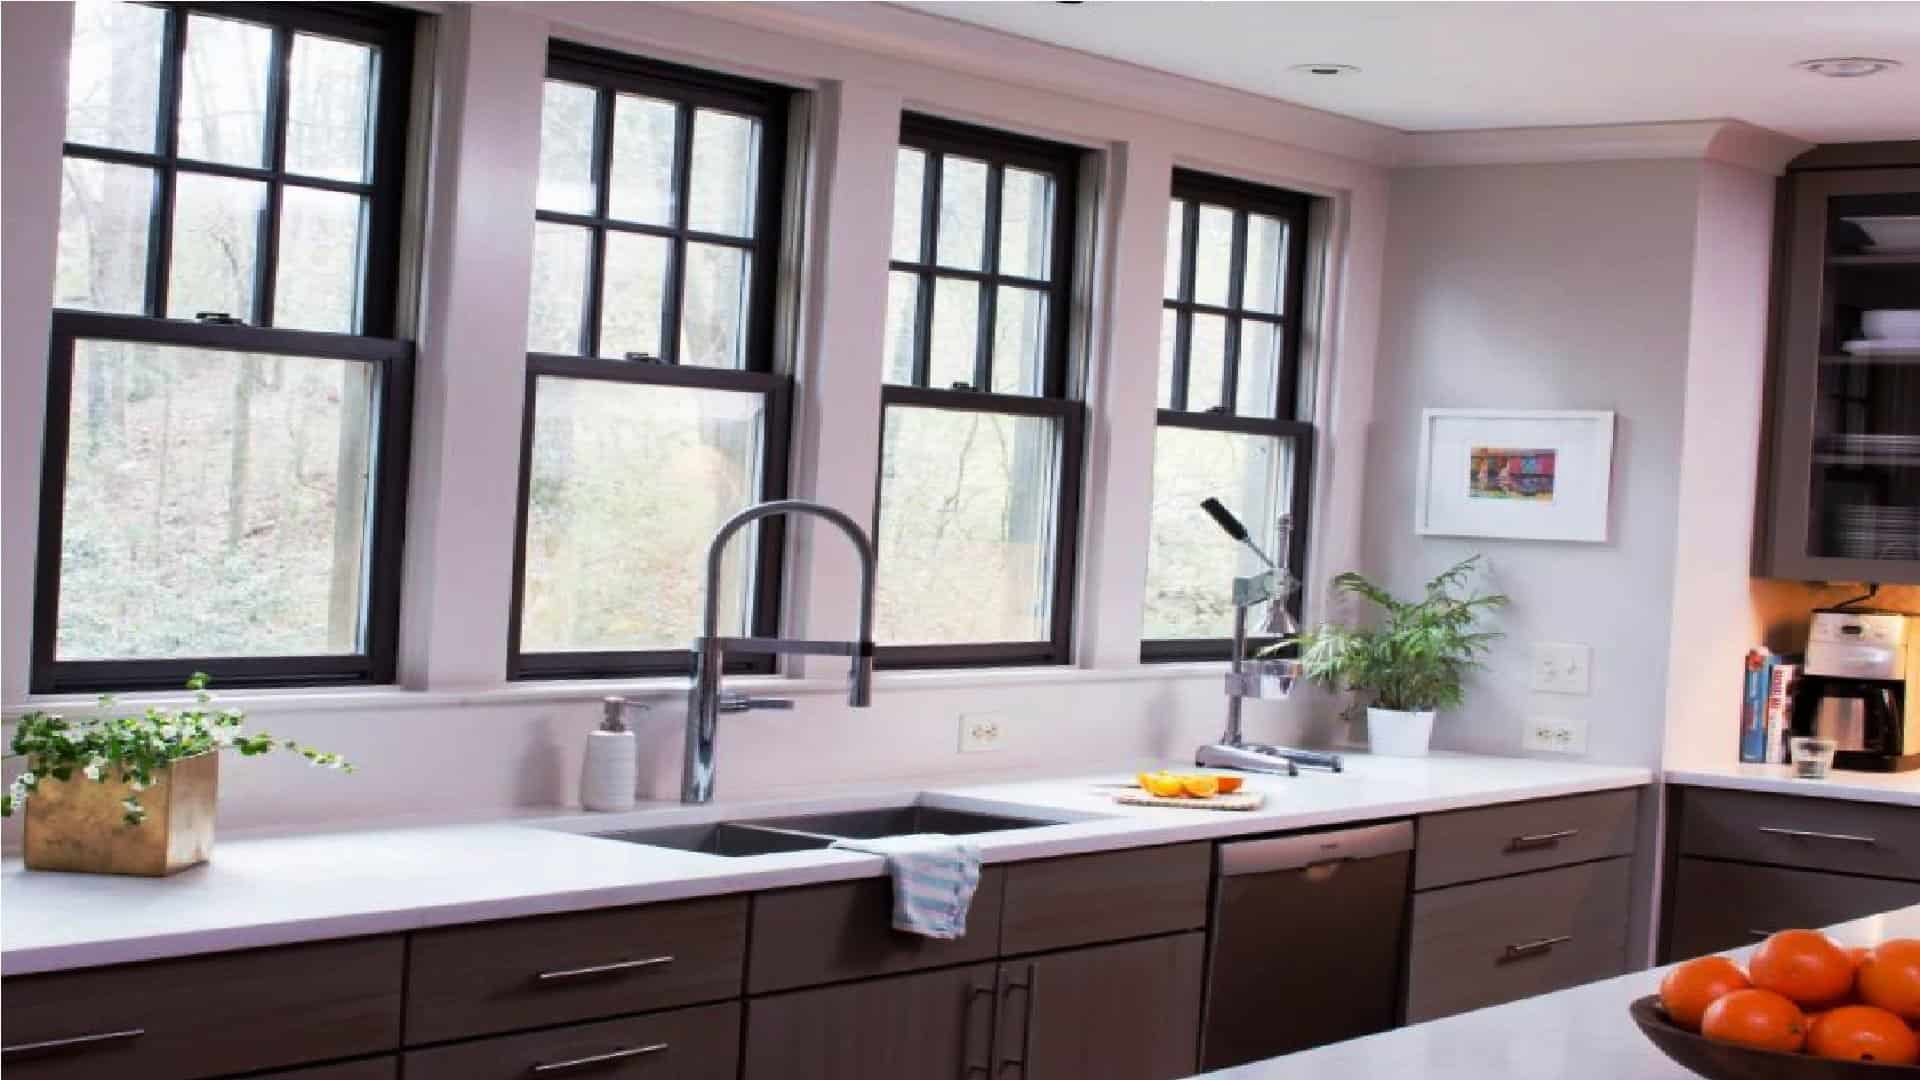 Kitchen style windows